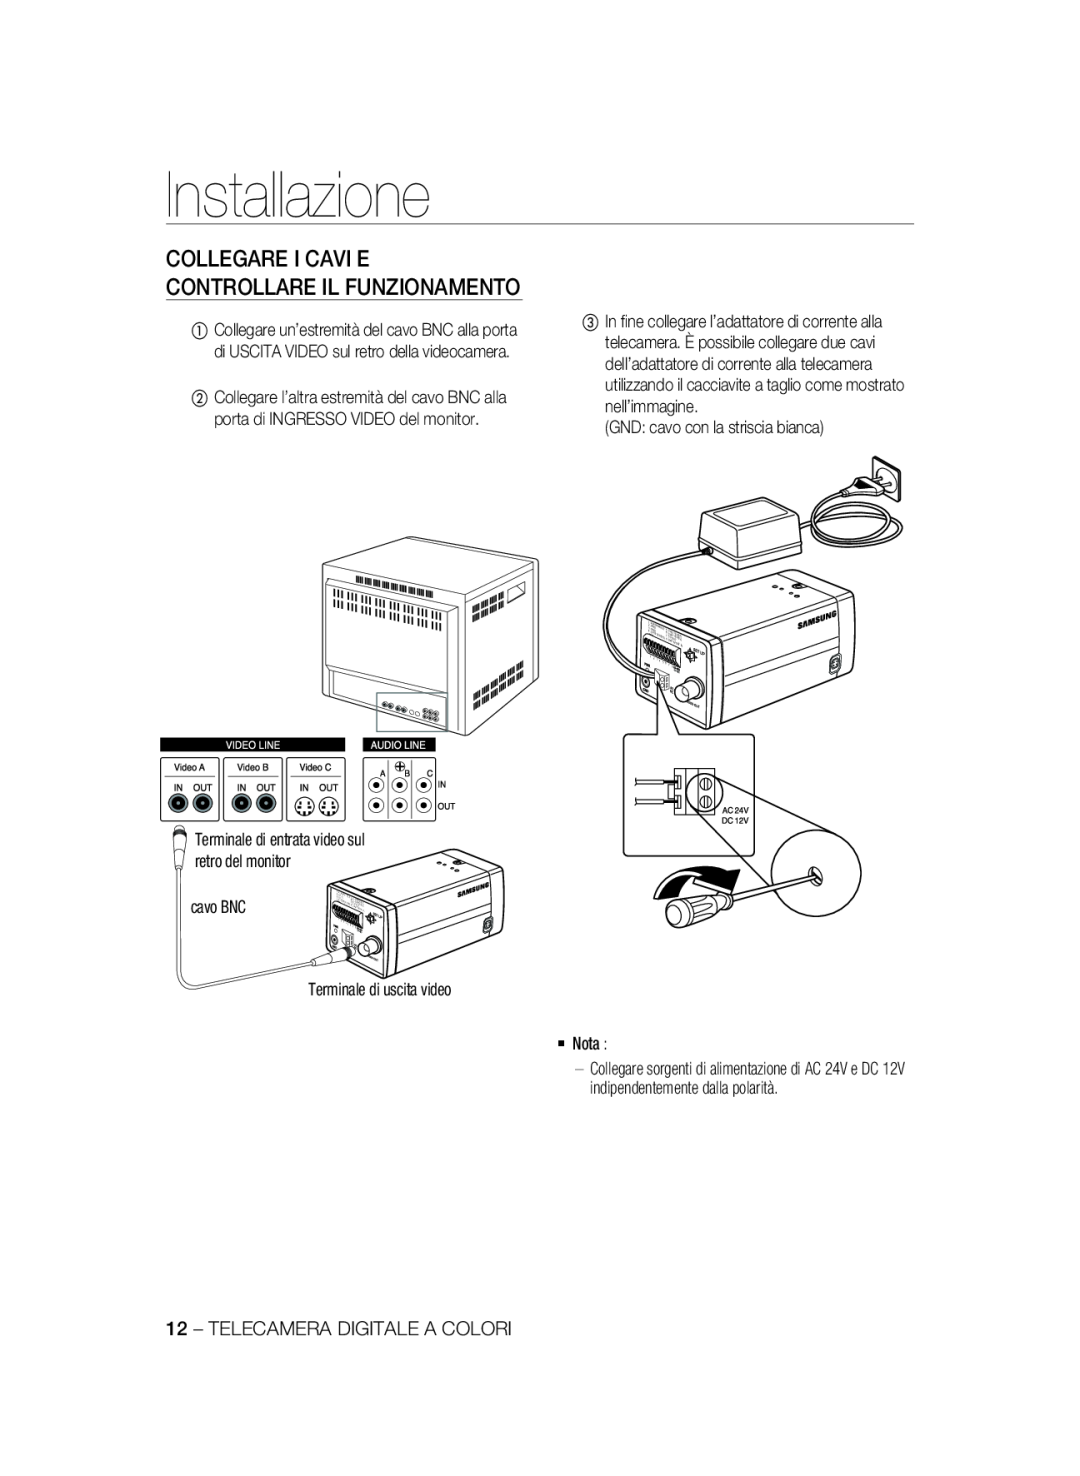 Samsung SCC-B2337P manual Installazione, Collegare I Cavi E Controllare Il Funzionamento, GND cavo con la striscia bianca 